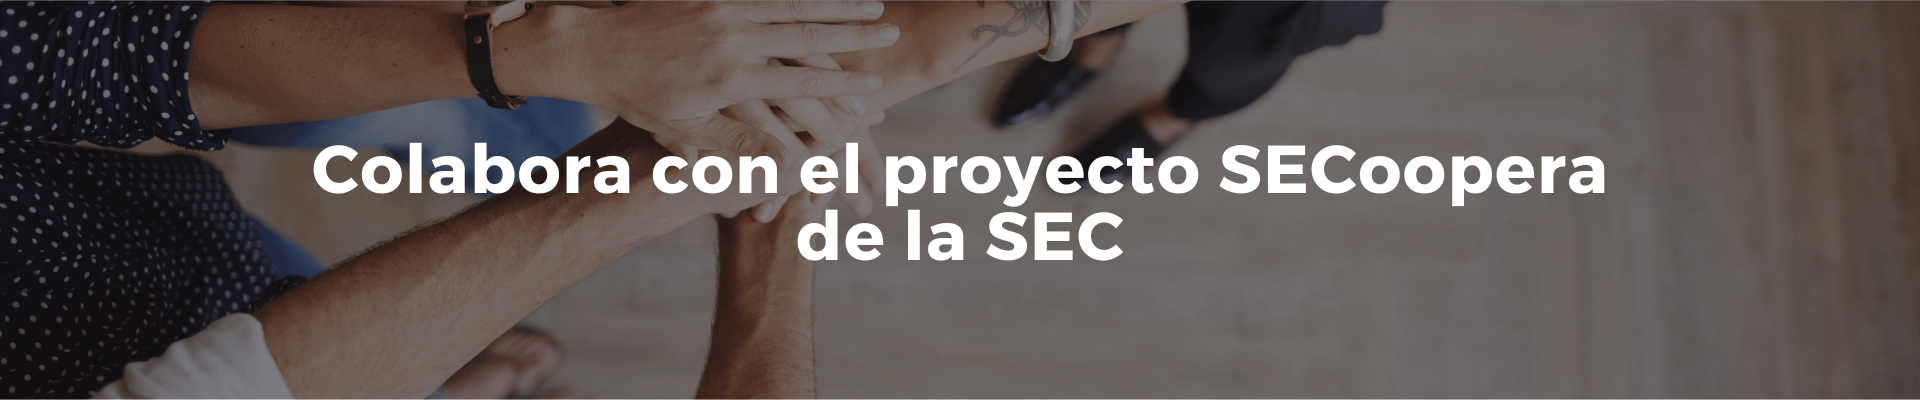 Campaña Colabora con el proyecto SECoopera de la SEC